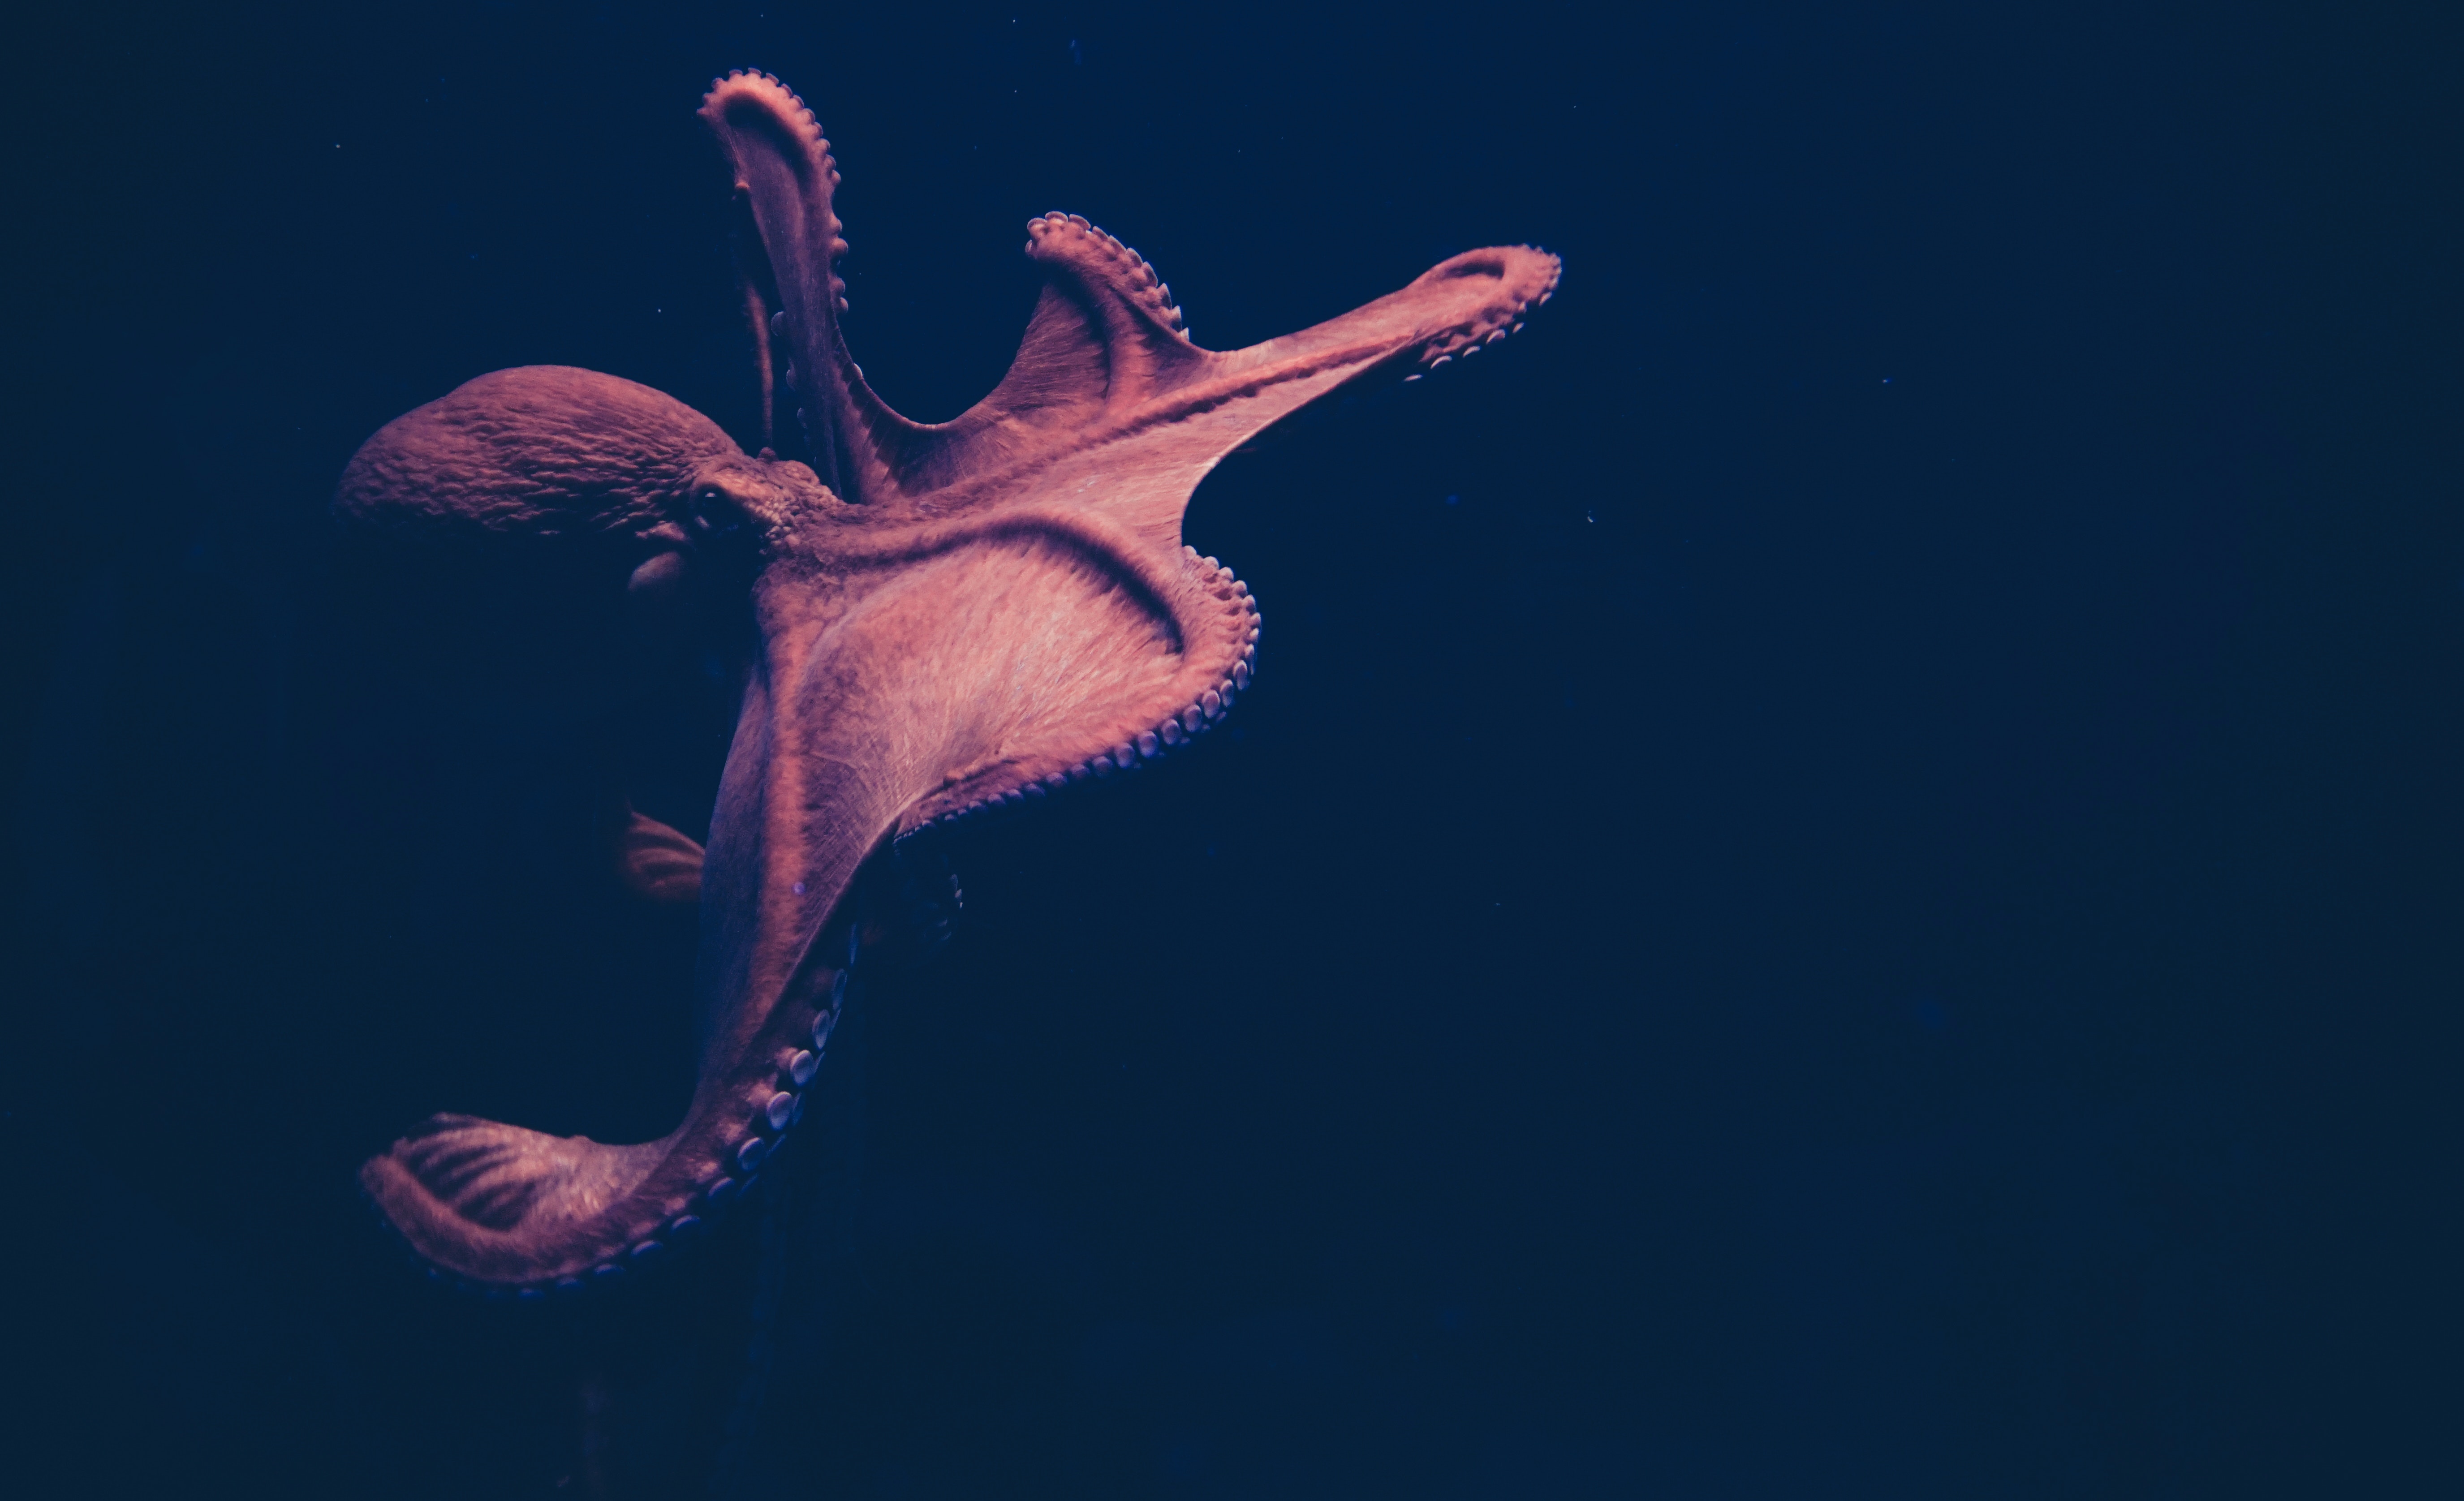 Free download wallpaper Octopus, Animal, Underwater on your PC desktop